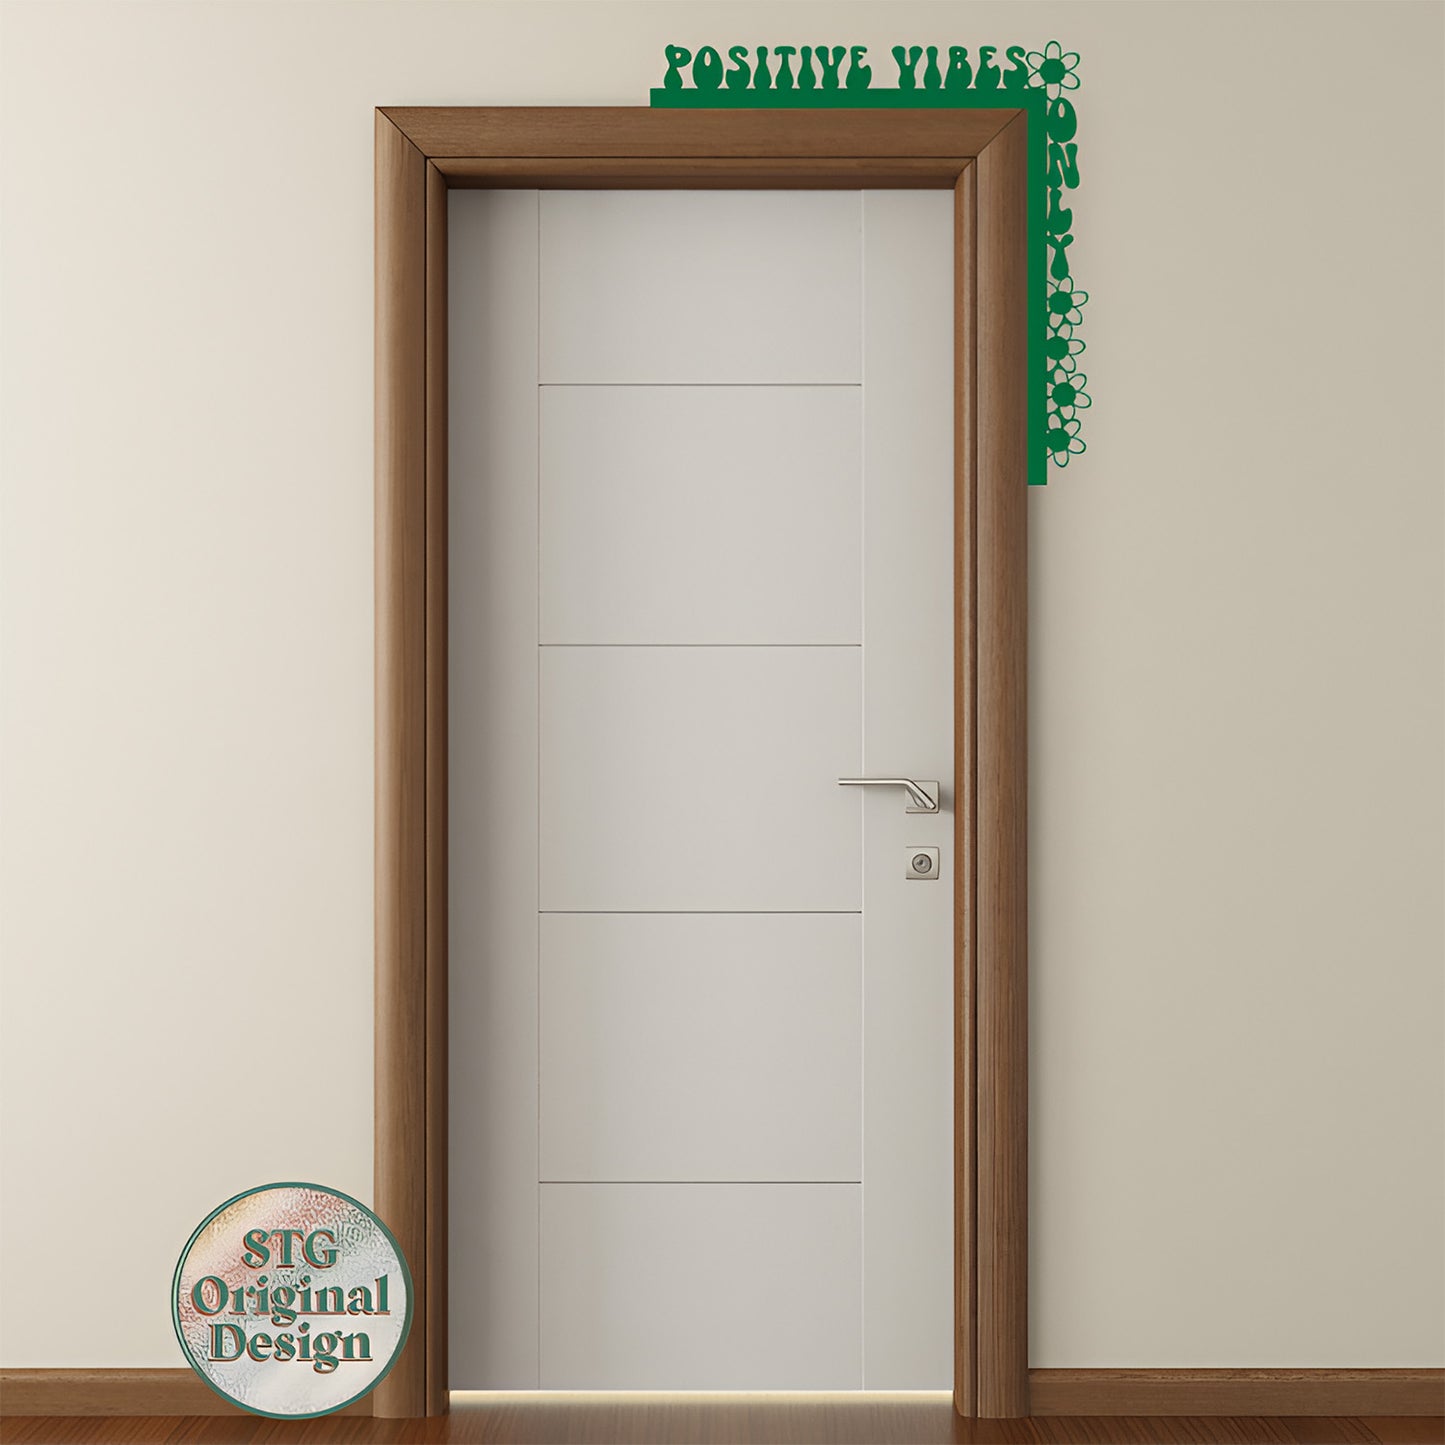 Positive Vibes Door Trim - Decorative Door Corner Accents